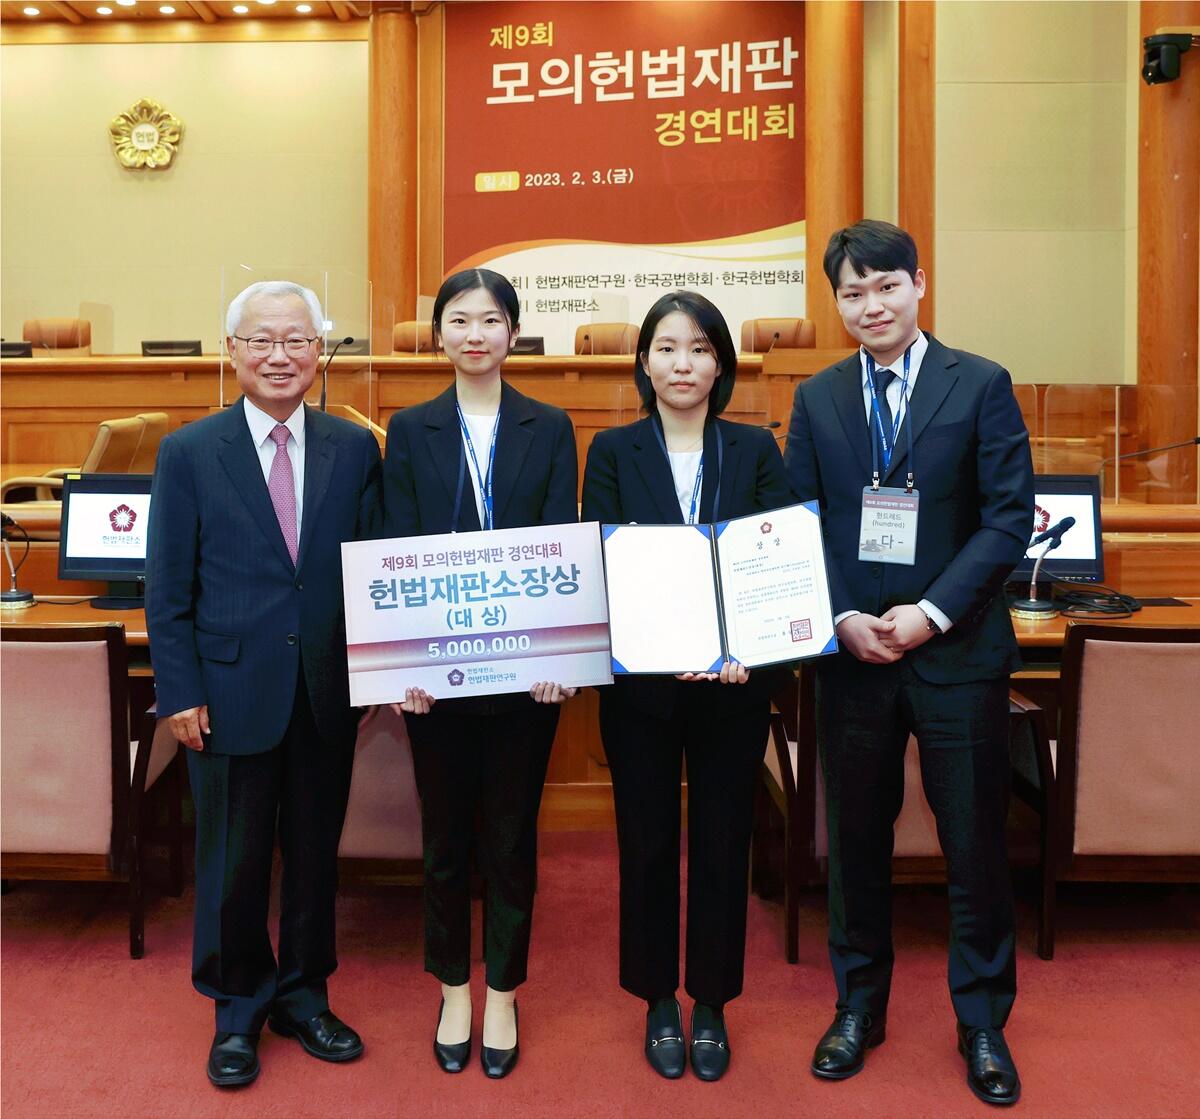 헌법재판소장상(대상)을 수상한 서울대 로스쿨 헌드레드팀